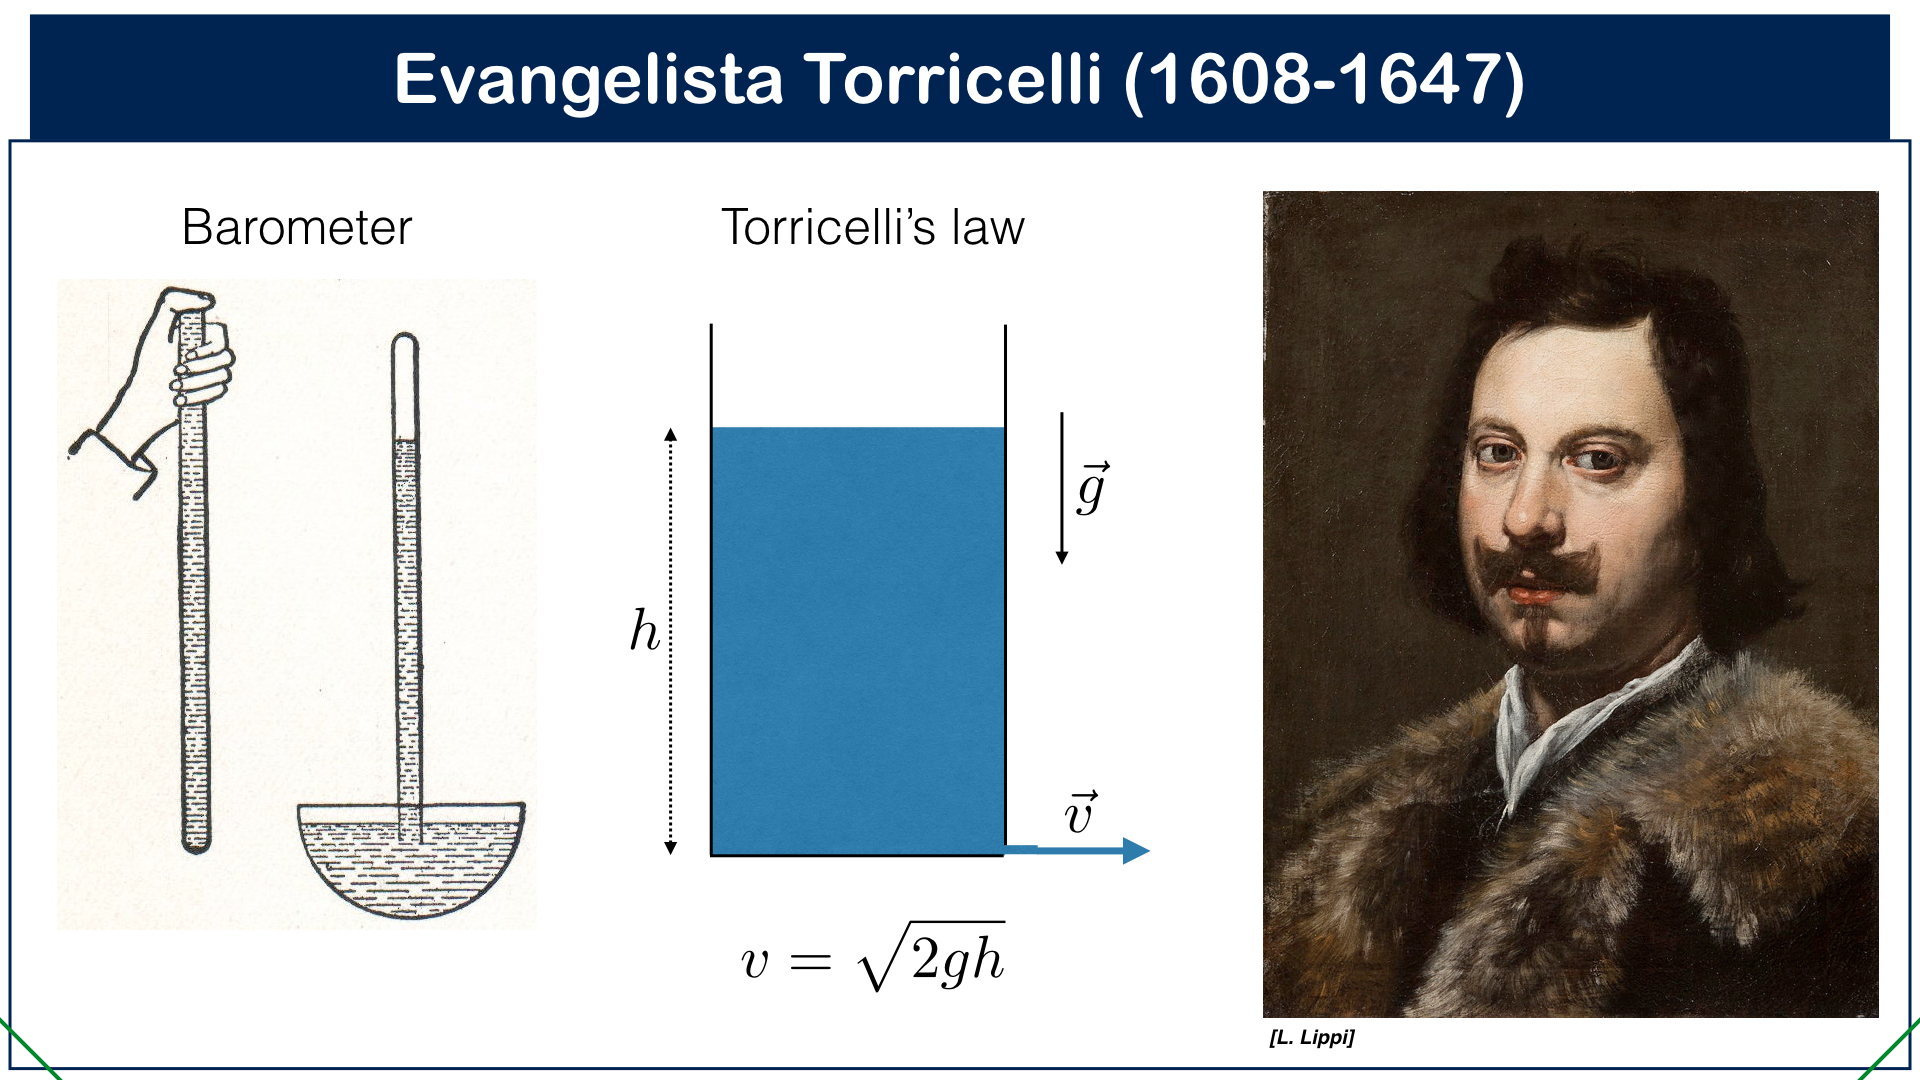 تويتر \ François Levrier على تويتر: "Evangelista Torricelli was born #OTD in 1608. A student of Galileo, he is credited with inventing the barometer, although some evidence suggests that Gasparo Berti may